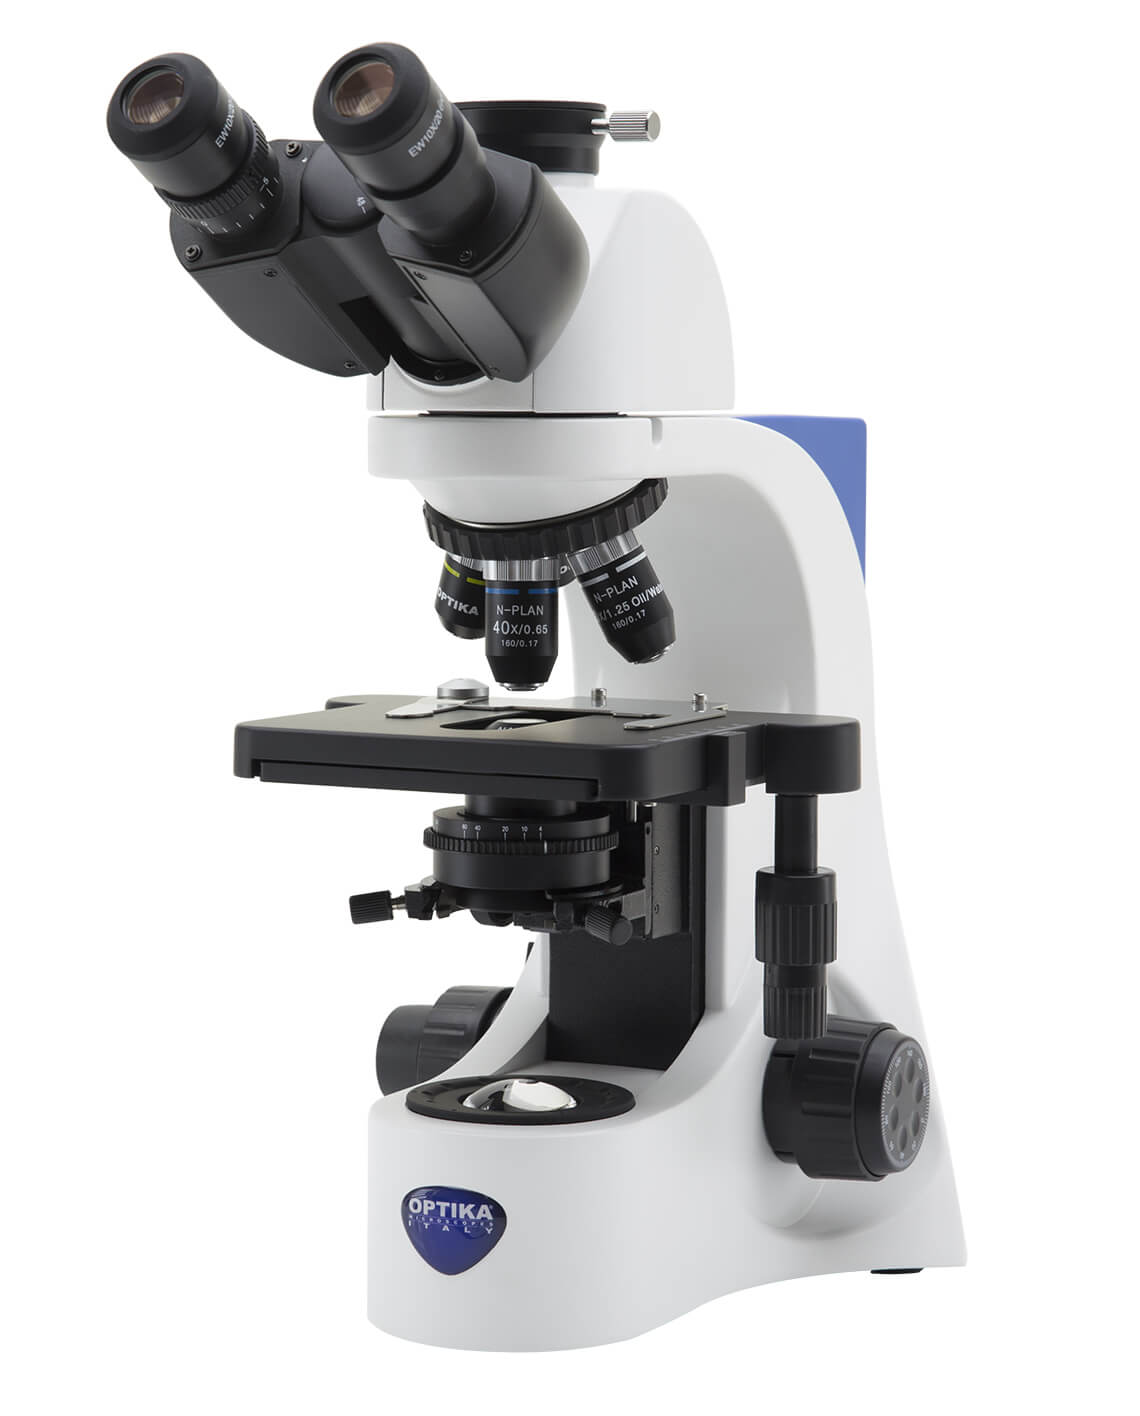 میکروسکوپ بیولوژی مدل Optika B-383PL | می مد